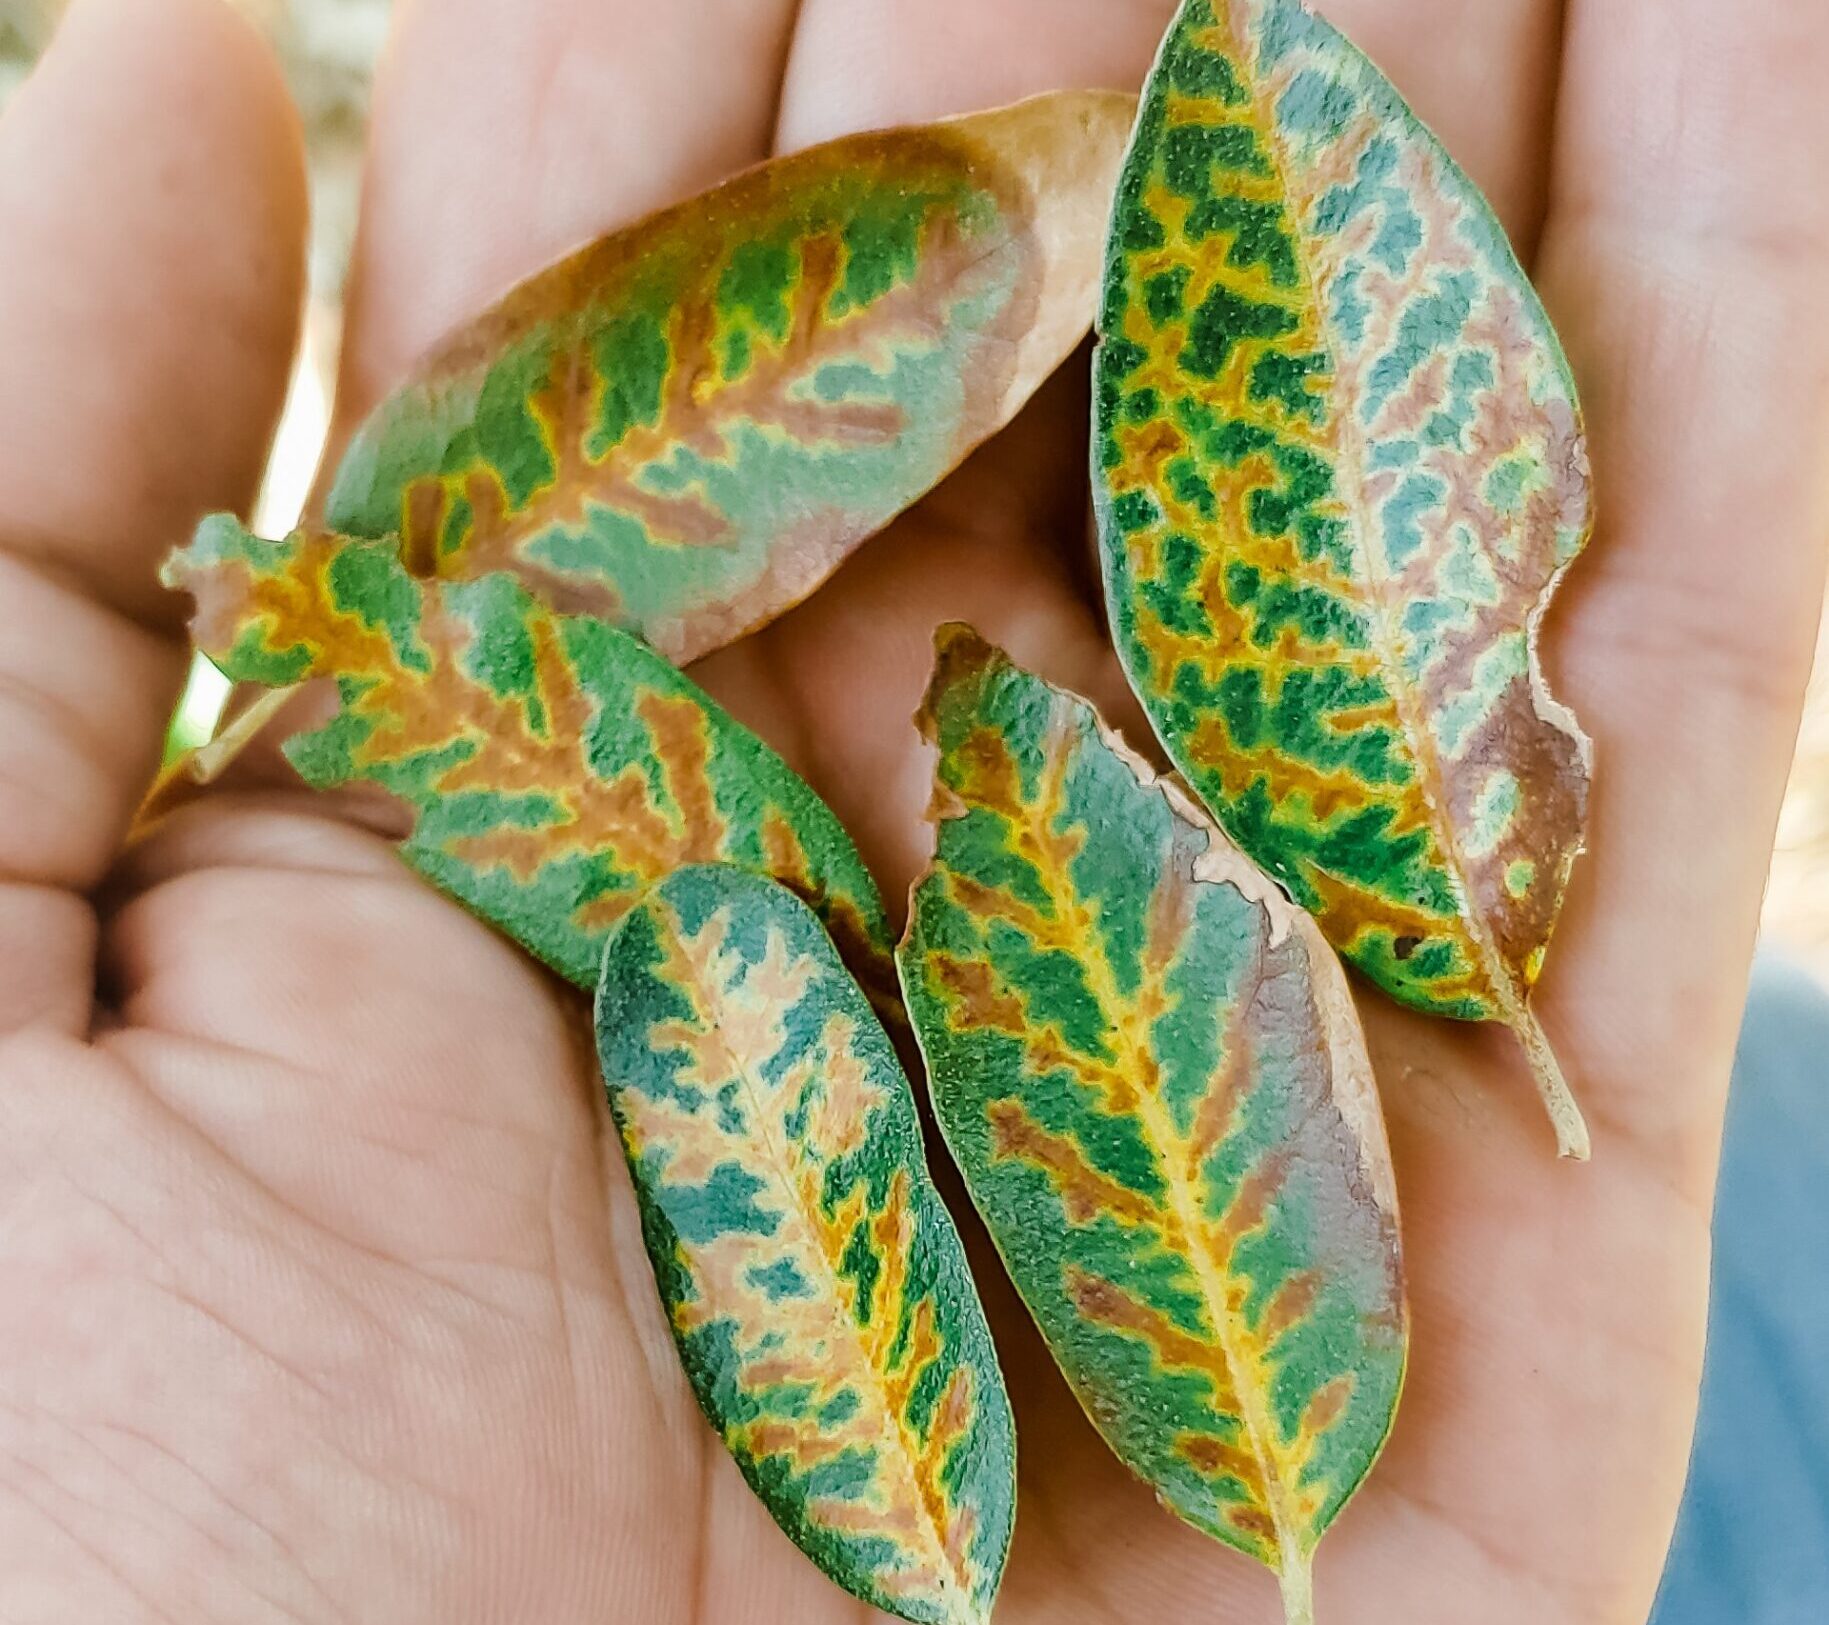 Foliar Symptom of Oak Wilt